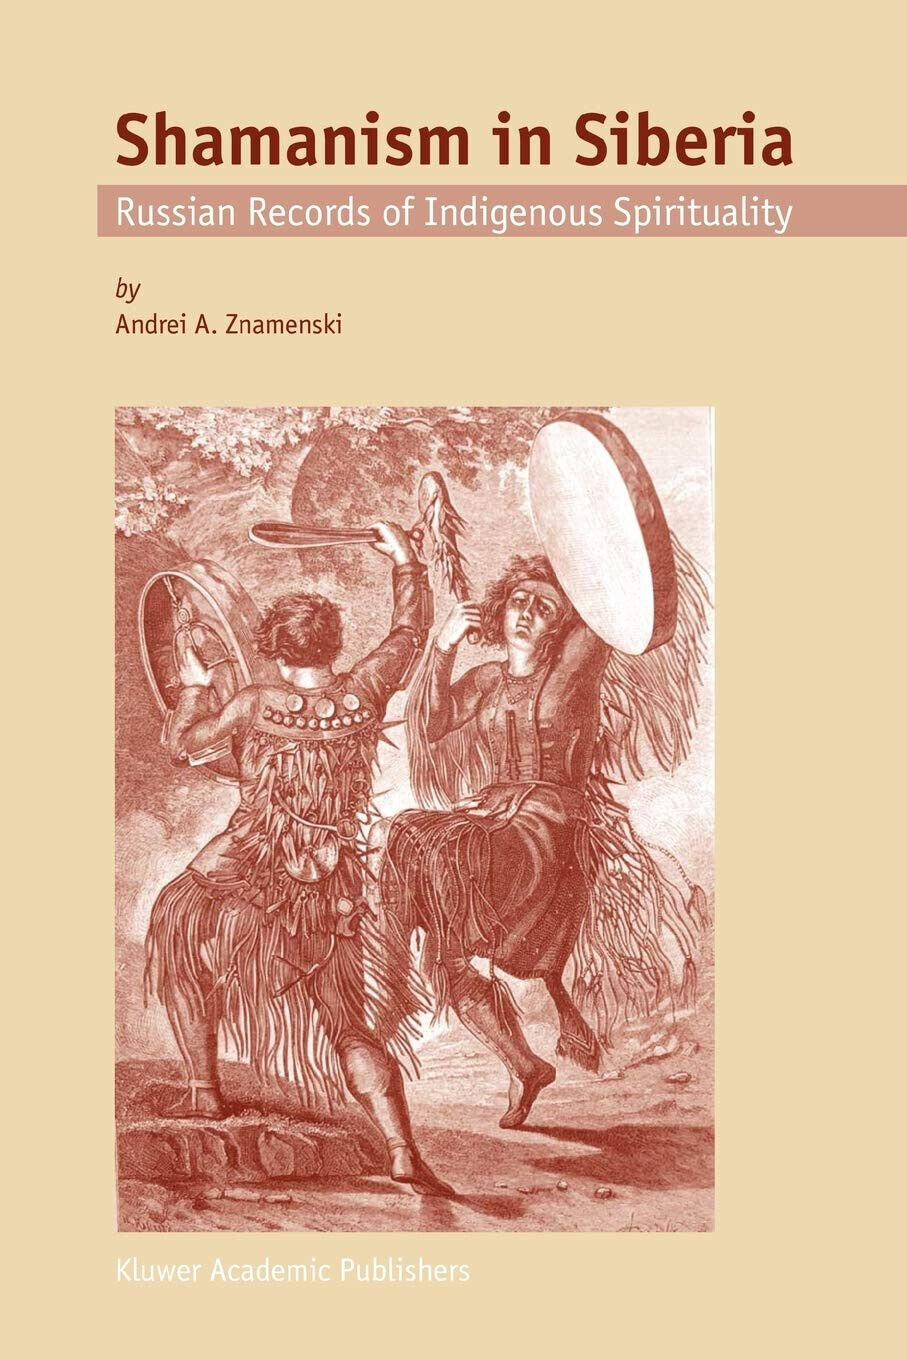 Shamanism in Siberia - A. A. Znamenski - Springer, 2010